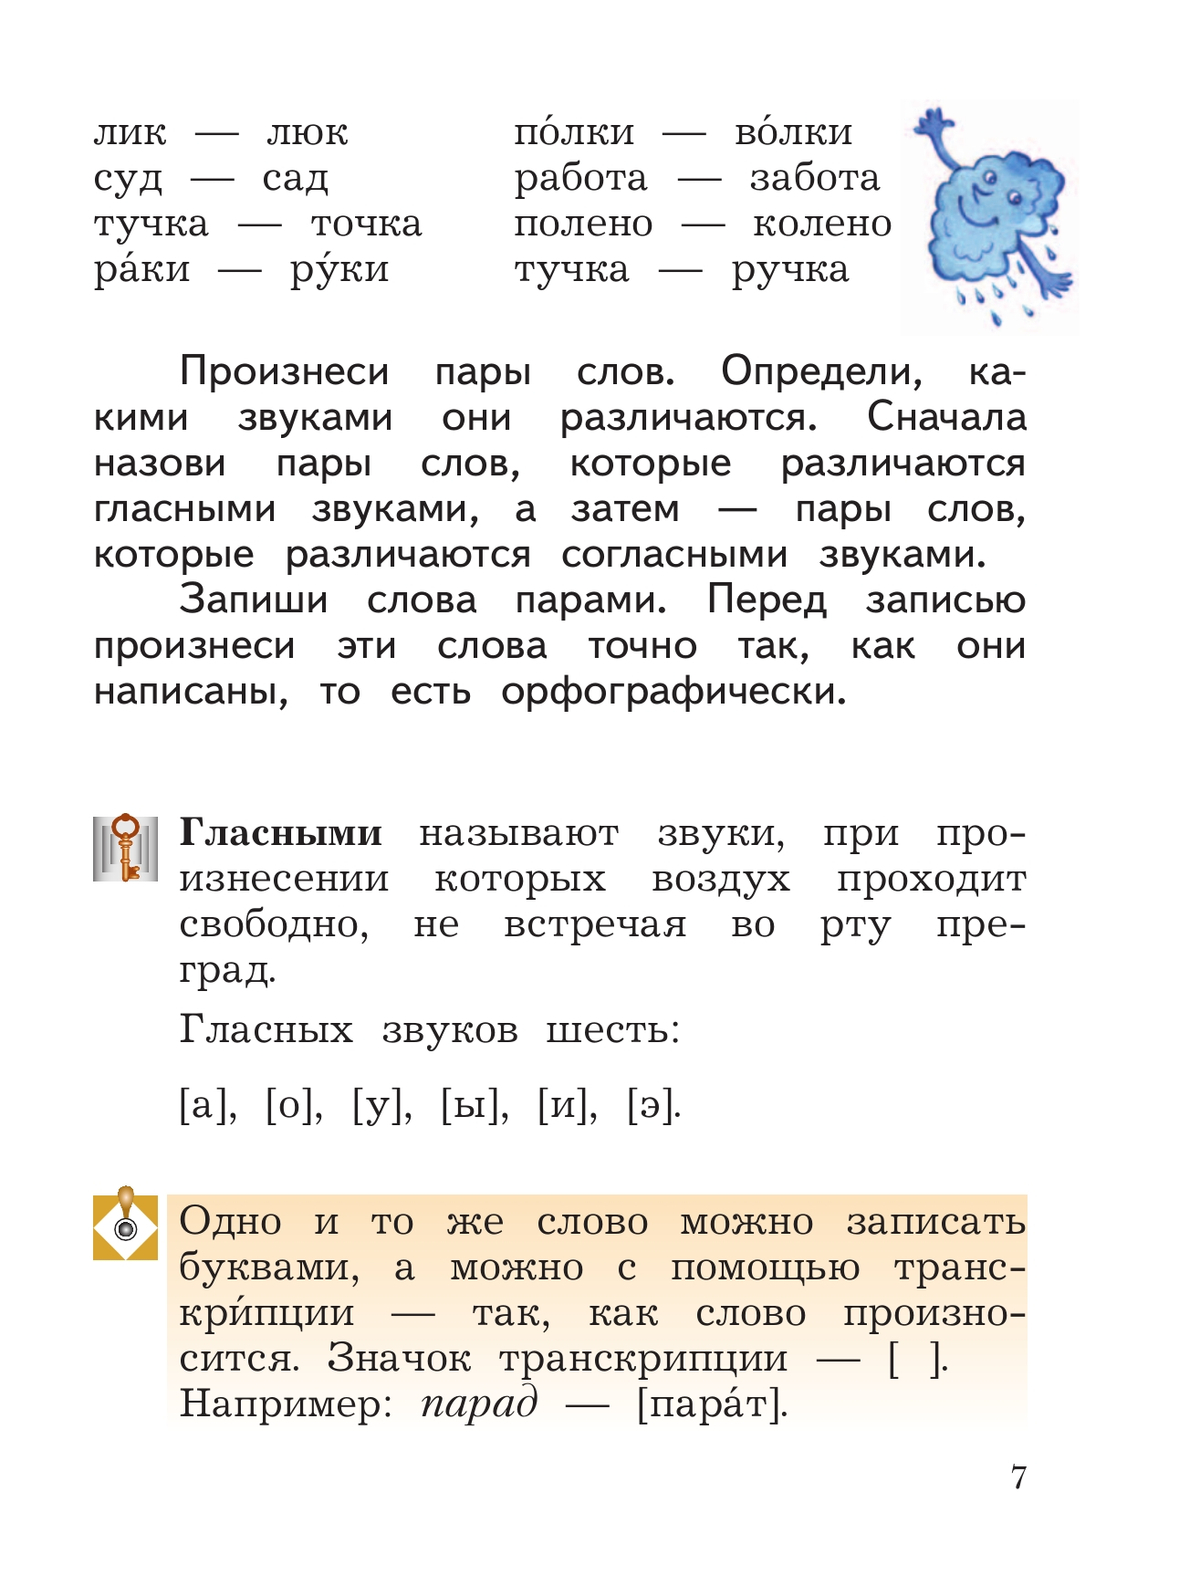 Русский язык. 2 класс. Учебное пособие. В 2 ч. Часть 1 9